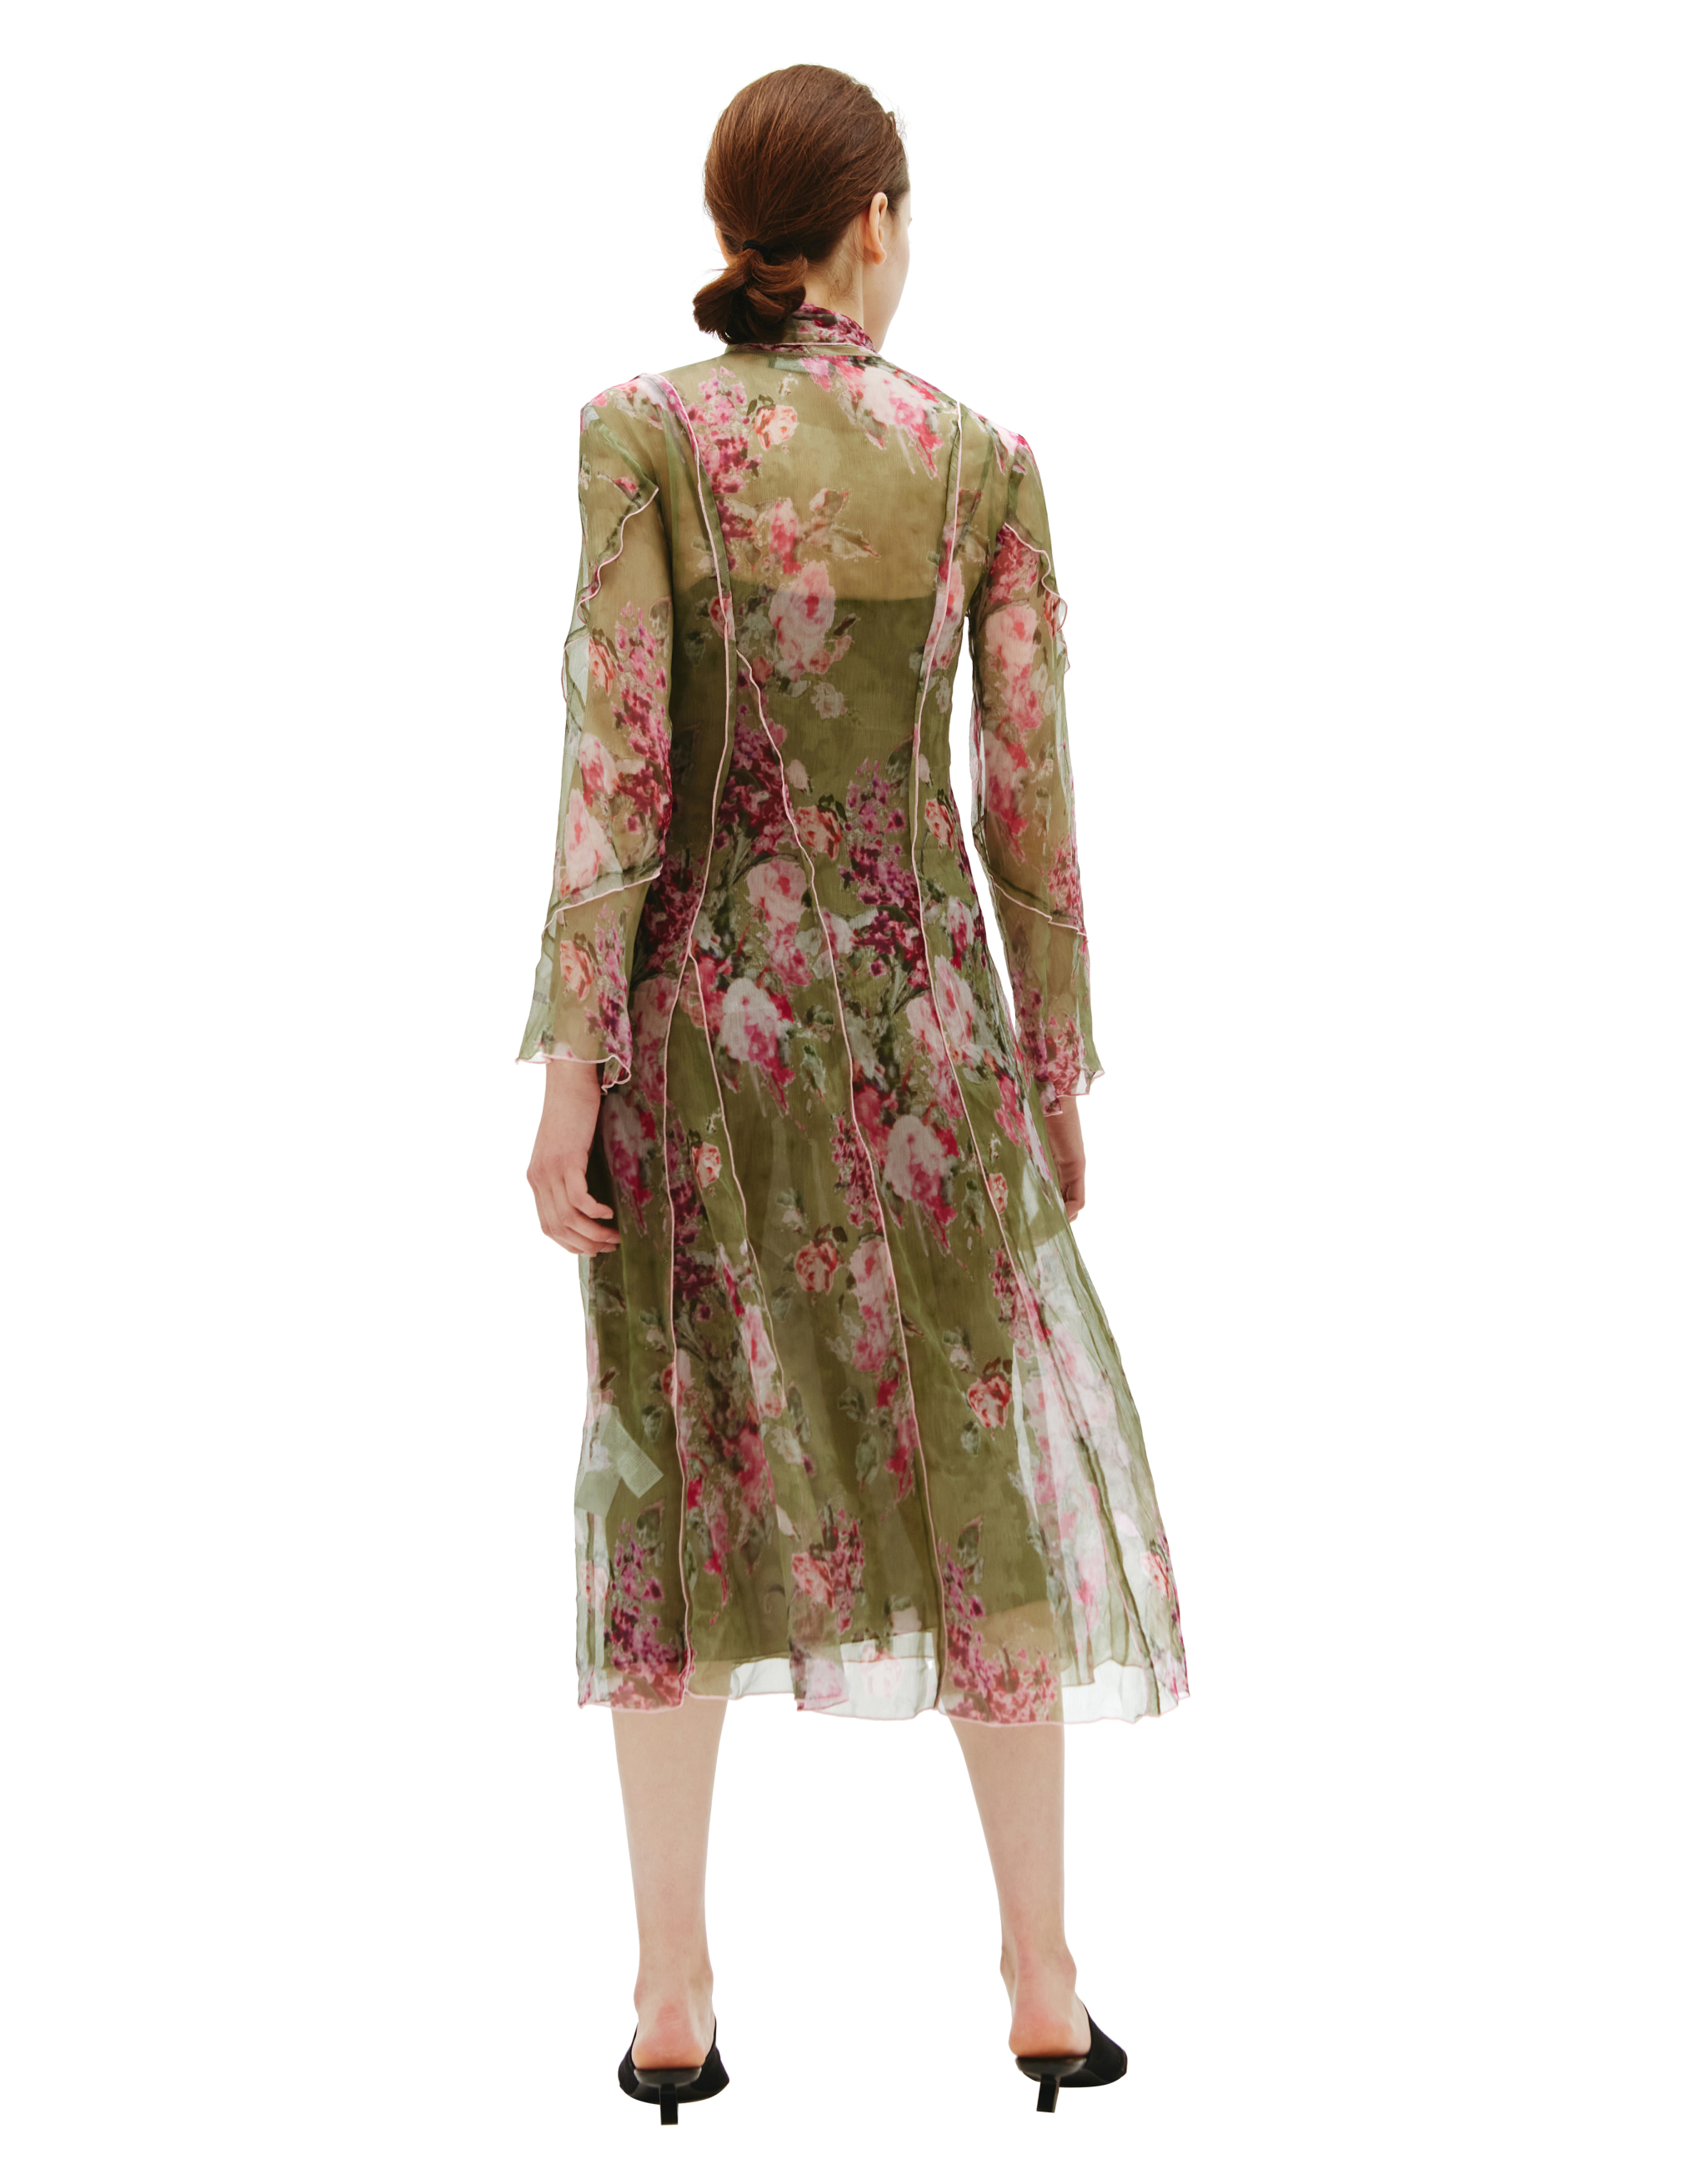 Шелковое платье с цветочным принтом Blumarine 232/2A114A/F4973, размер 38;40 232/2A114A/F4973 - фото 3